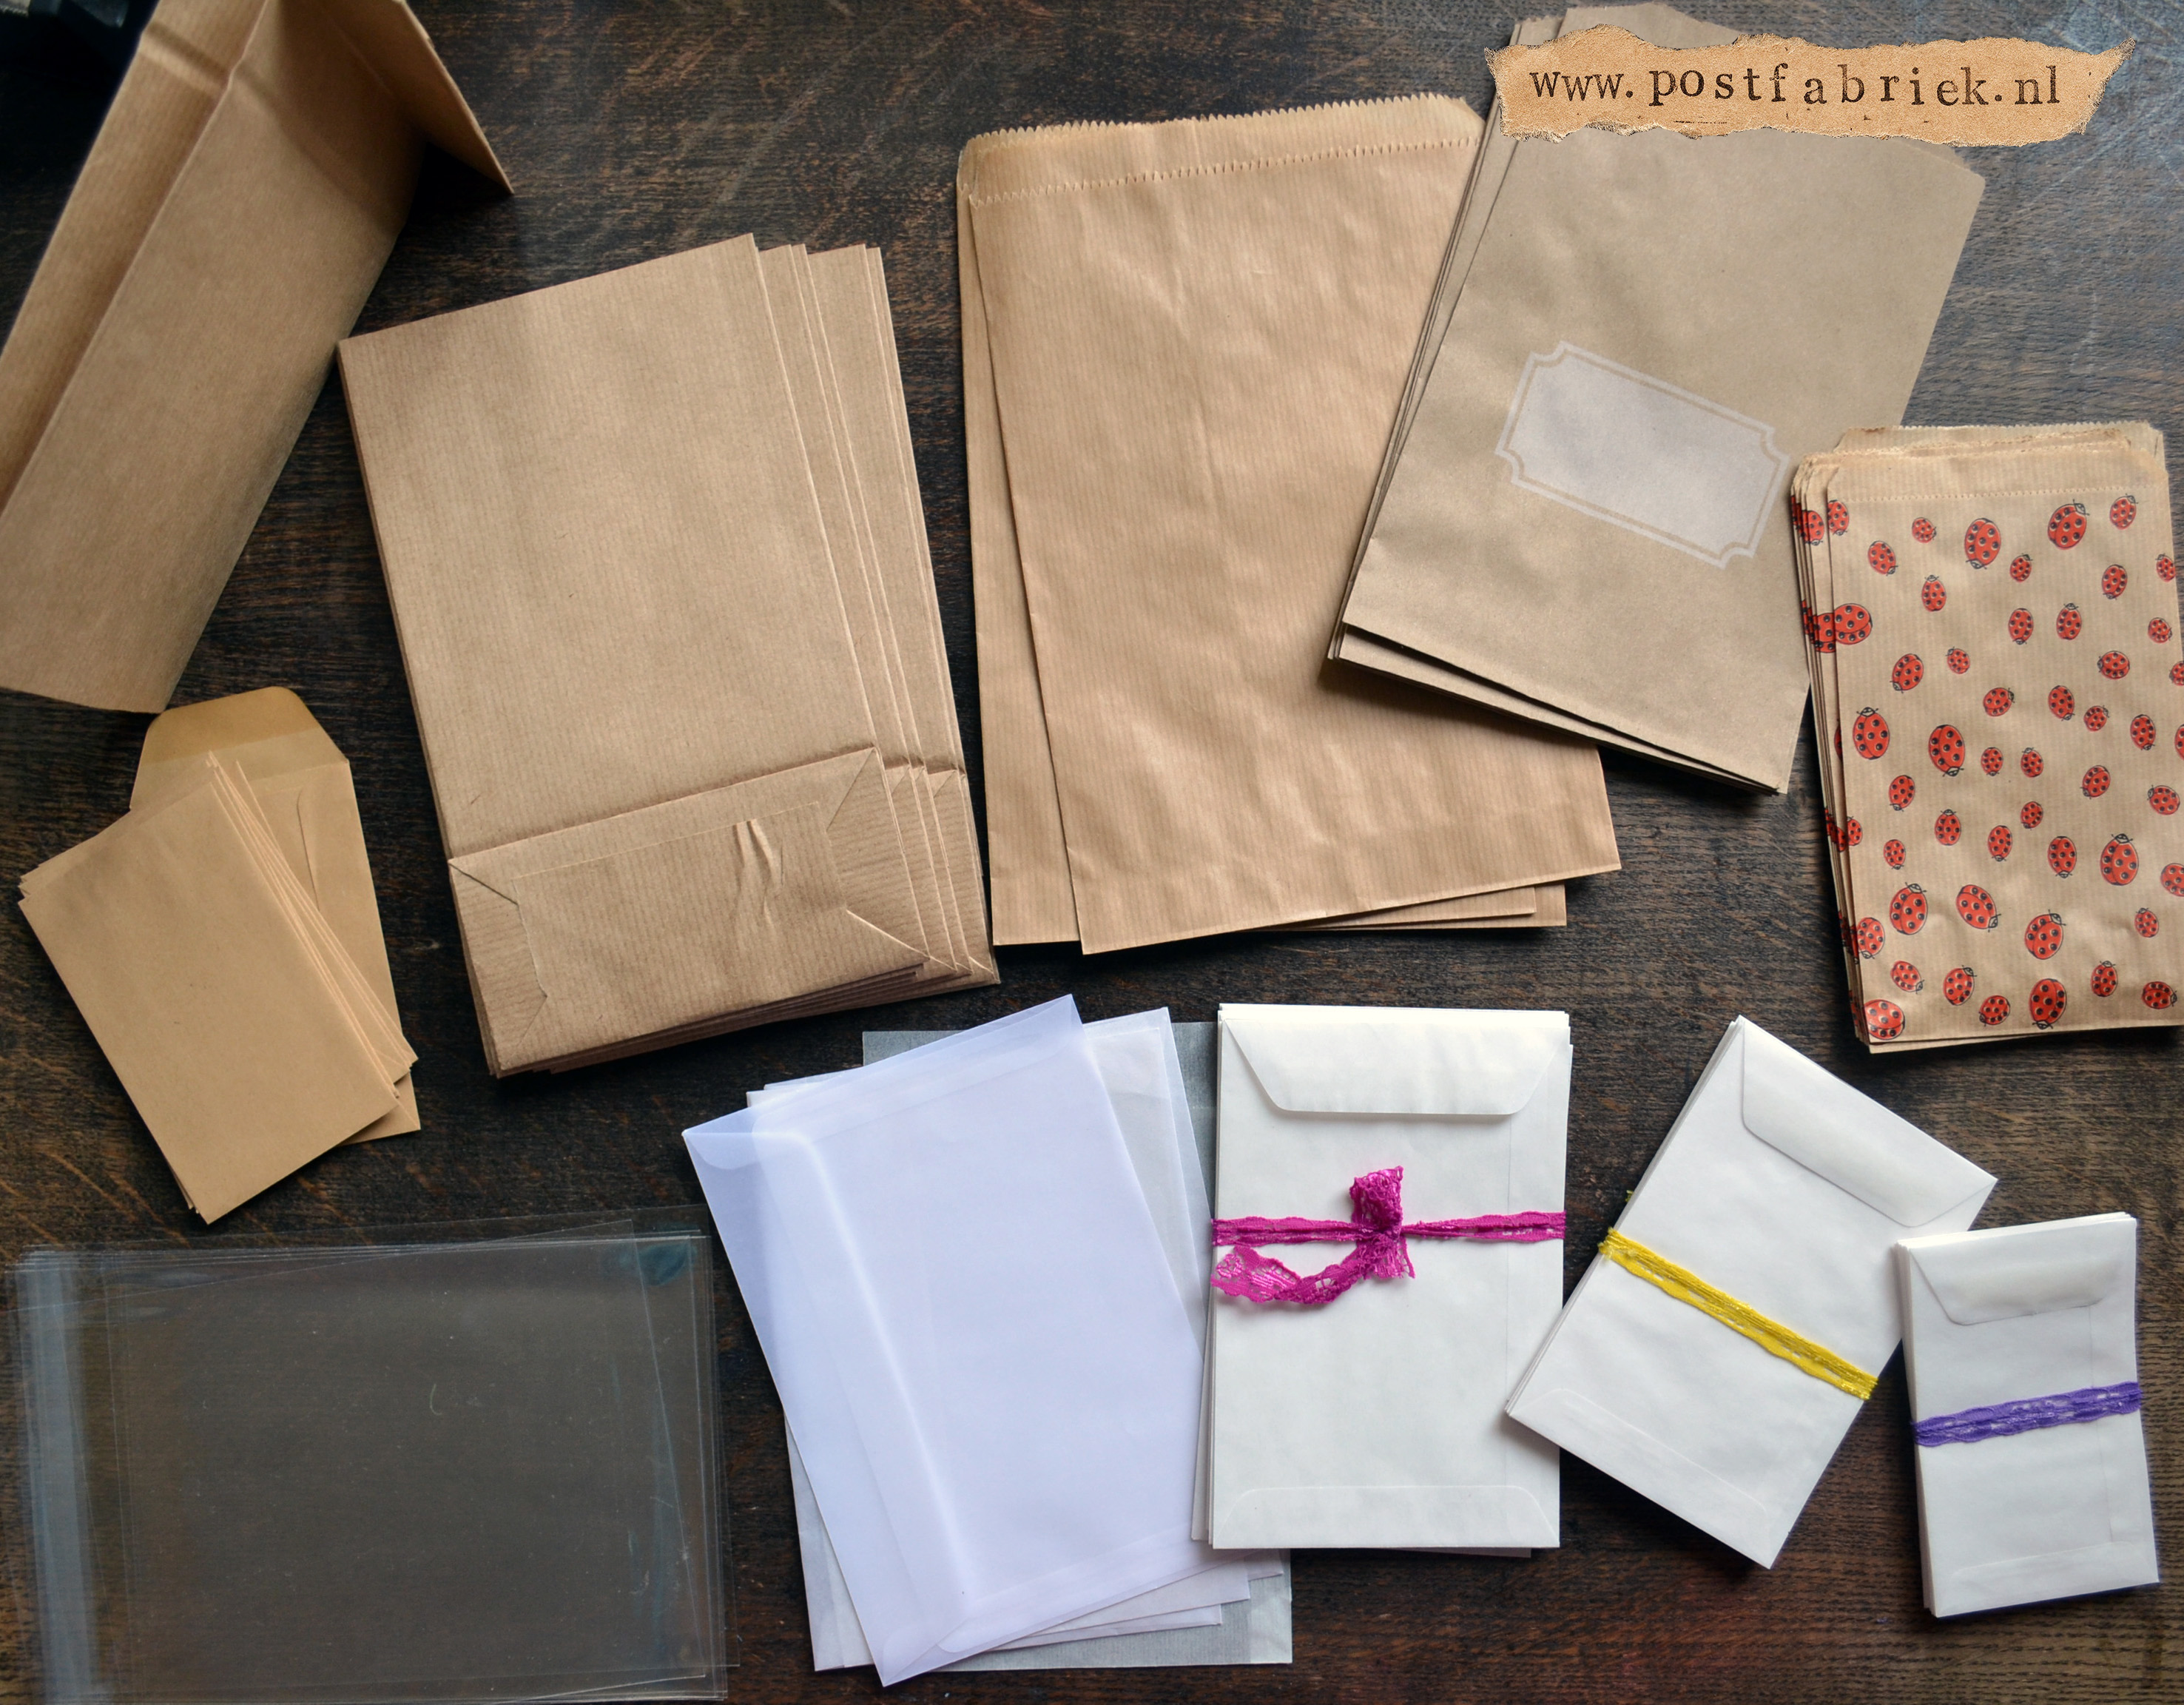 Staan voor Pigment Walging Dol op papieren zakjes! - Postfabriek